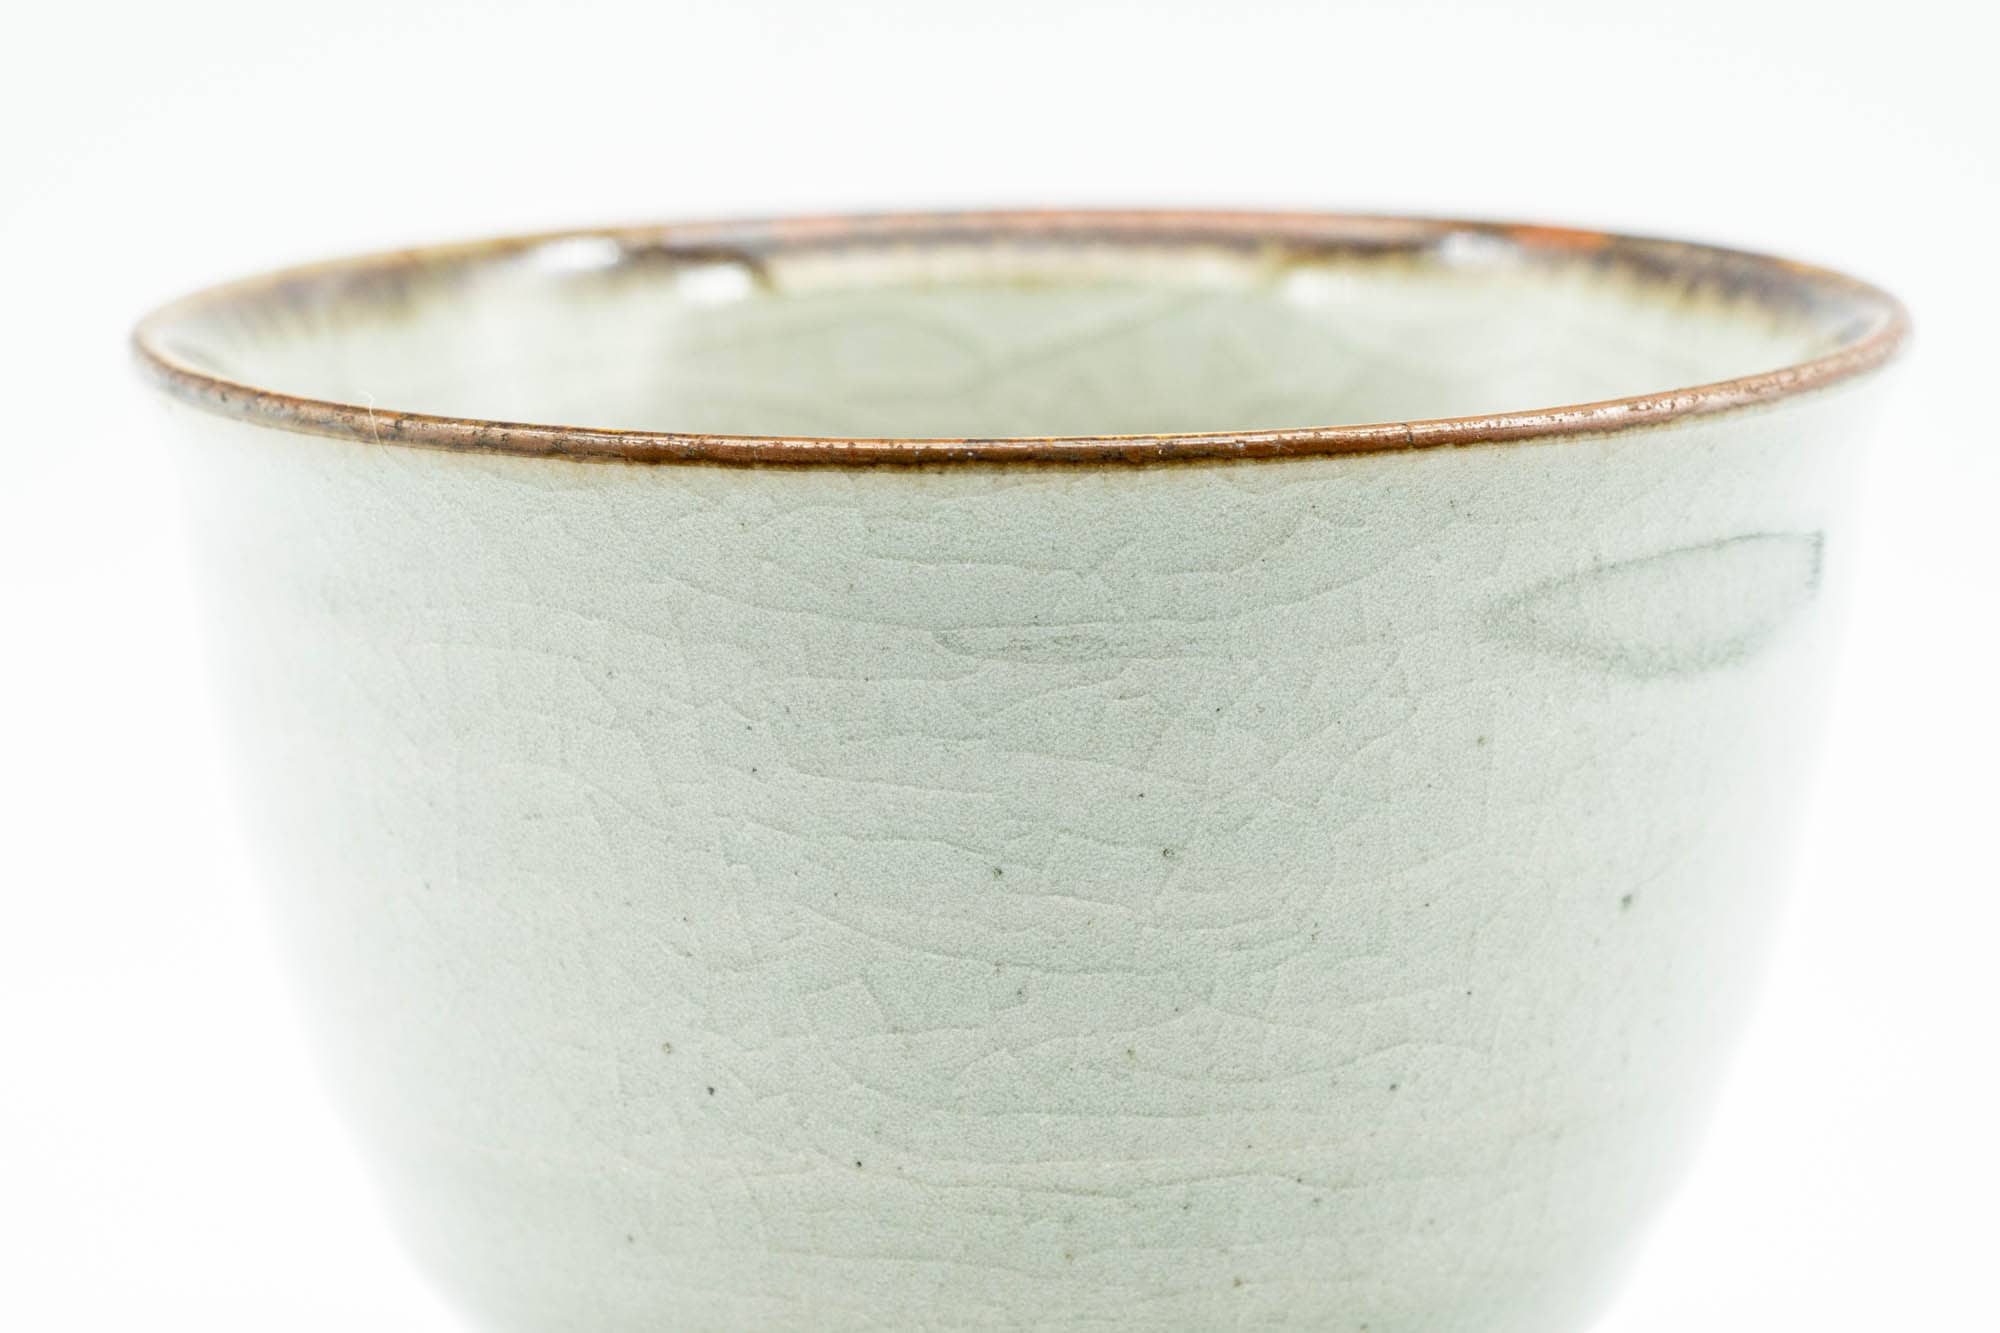 Japanese Teacup - Green Celadon Glazed Spiraling Yunomi - 140ml